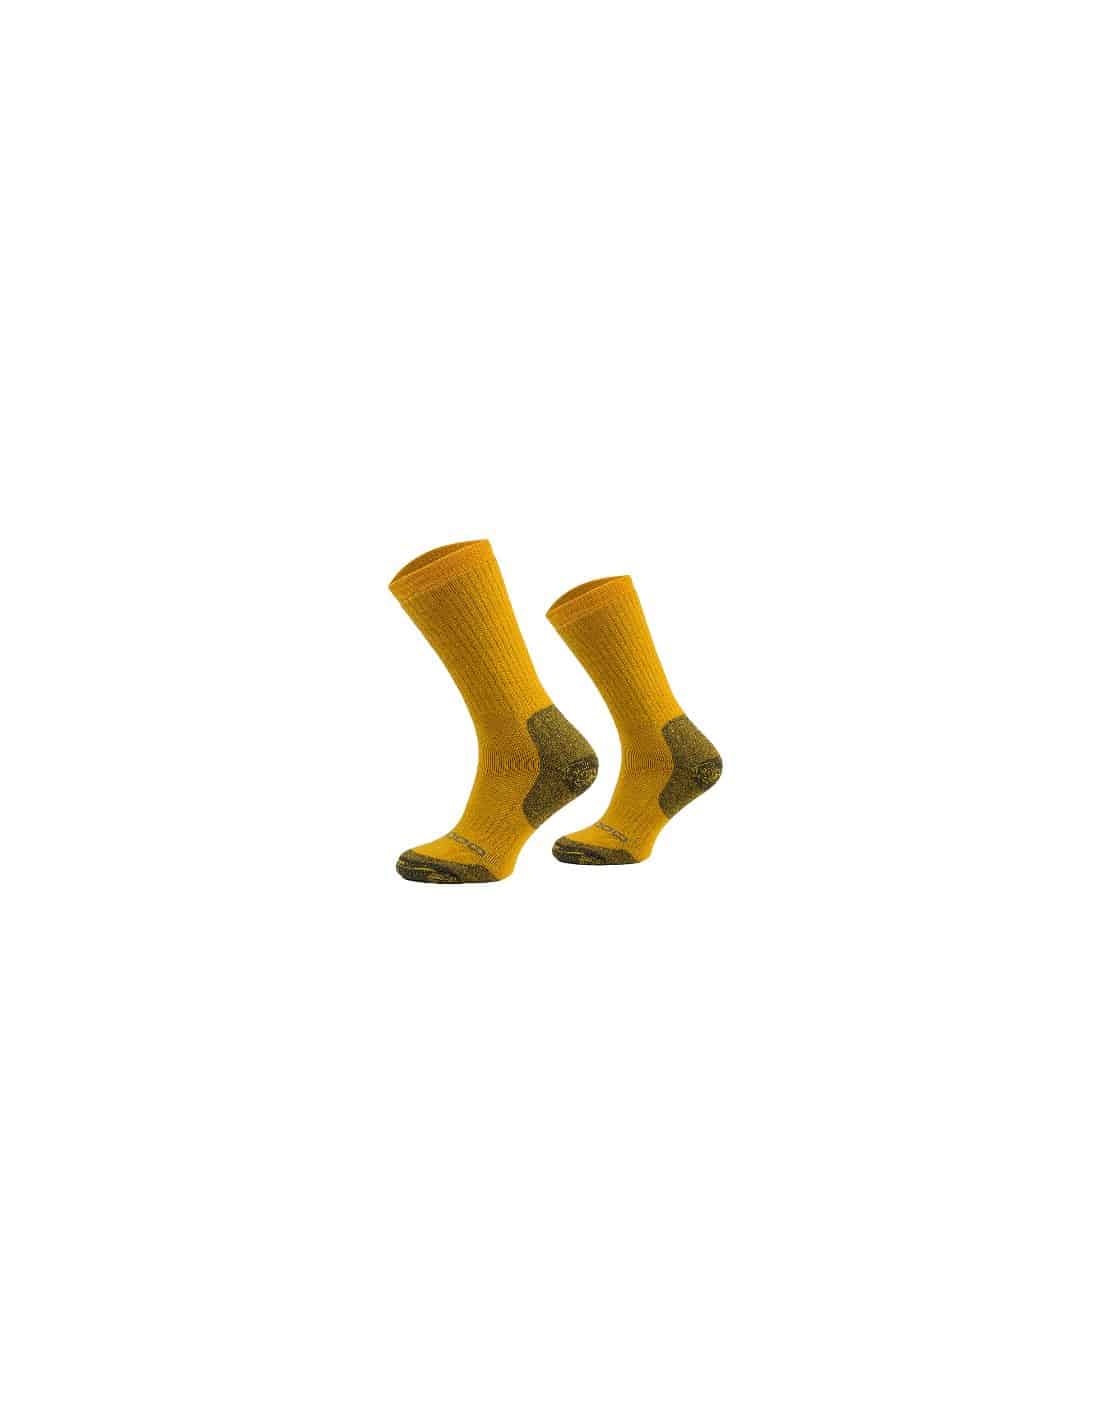 Mi-chaussettes de randonnée en laine mérinos avec Moisture Guard pour hommes,  Copper Sole, paquet de 2 paires